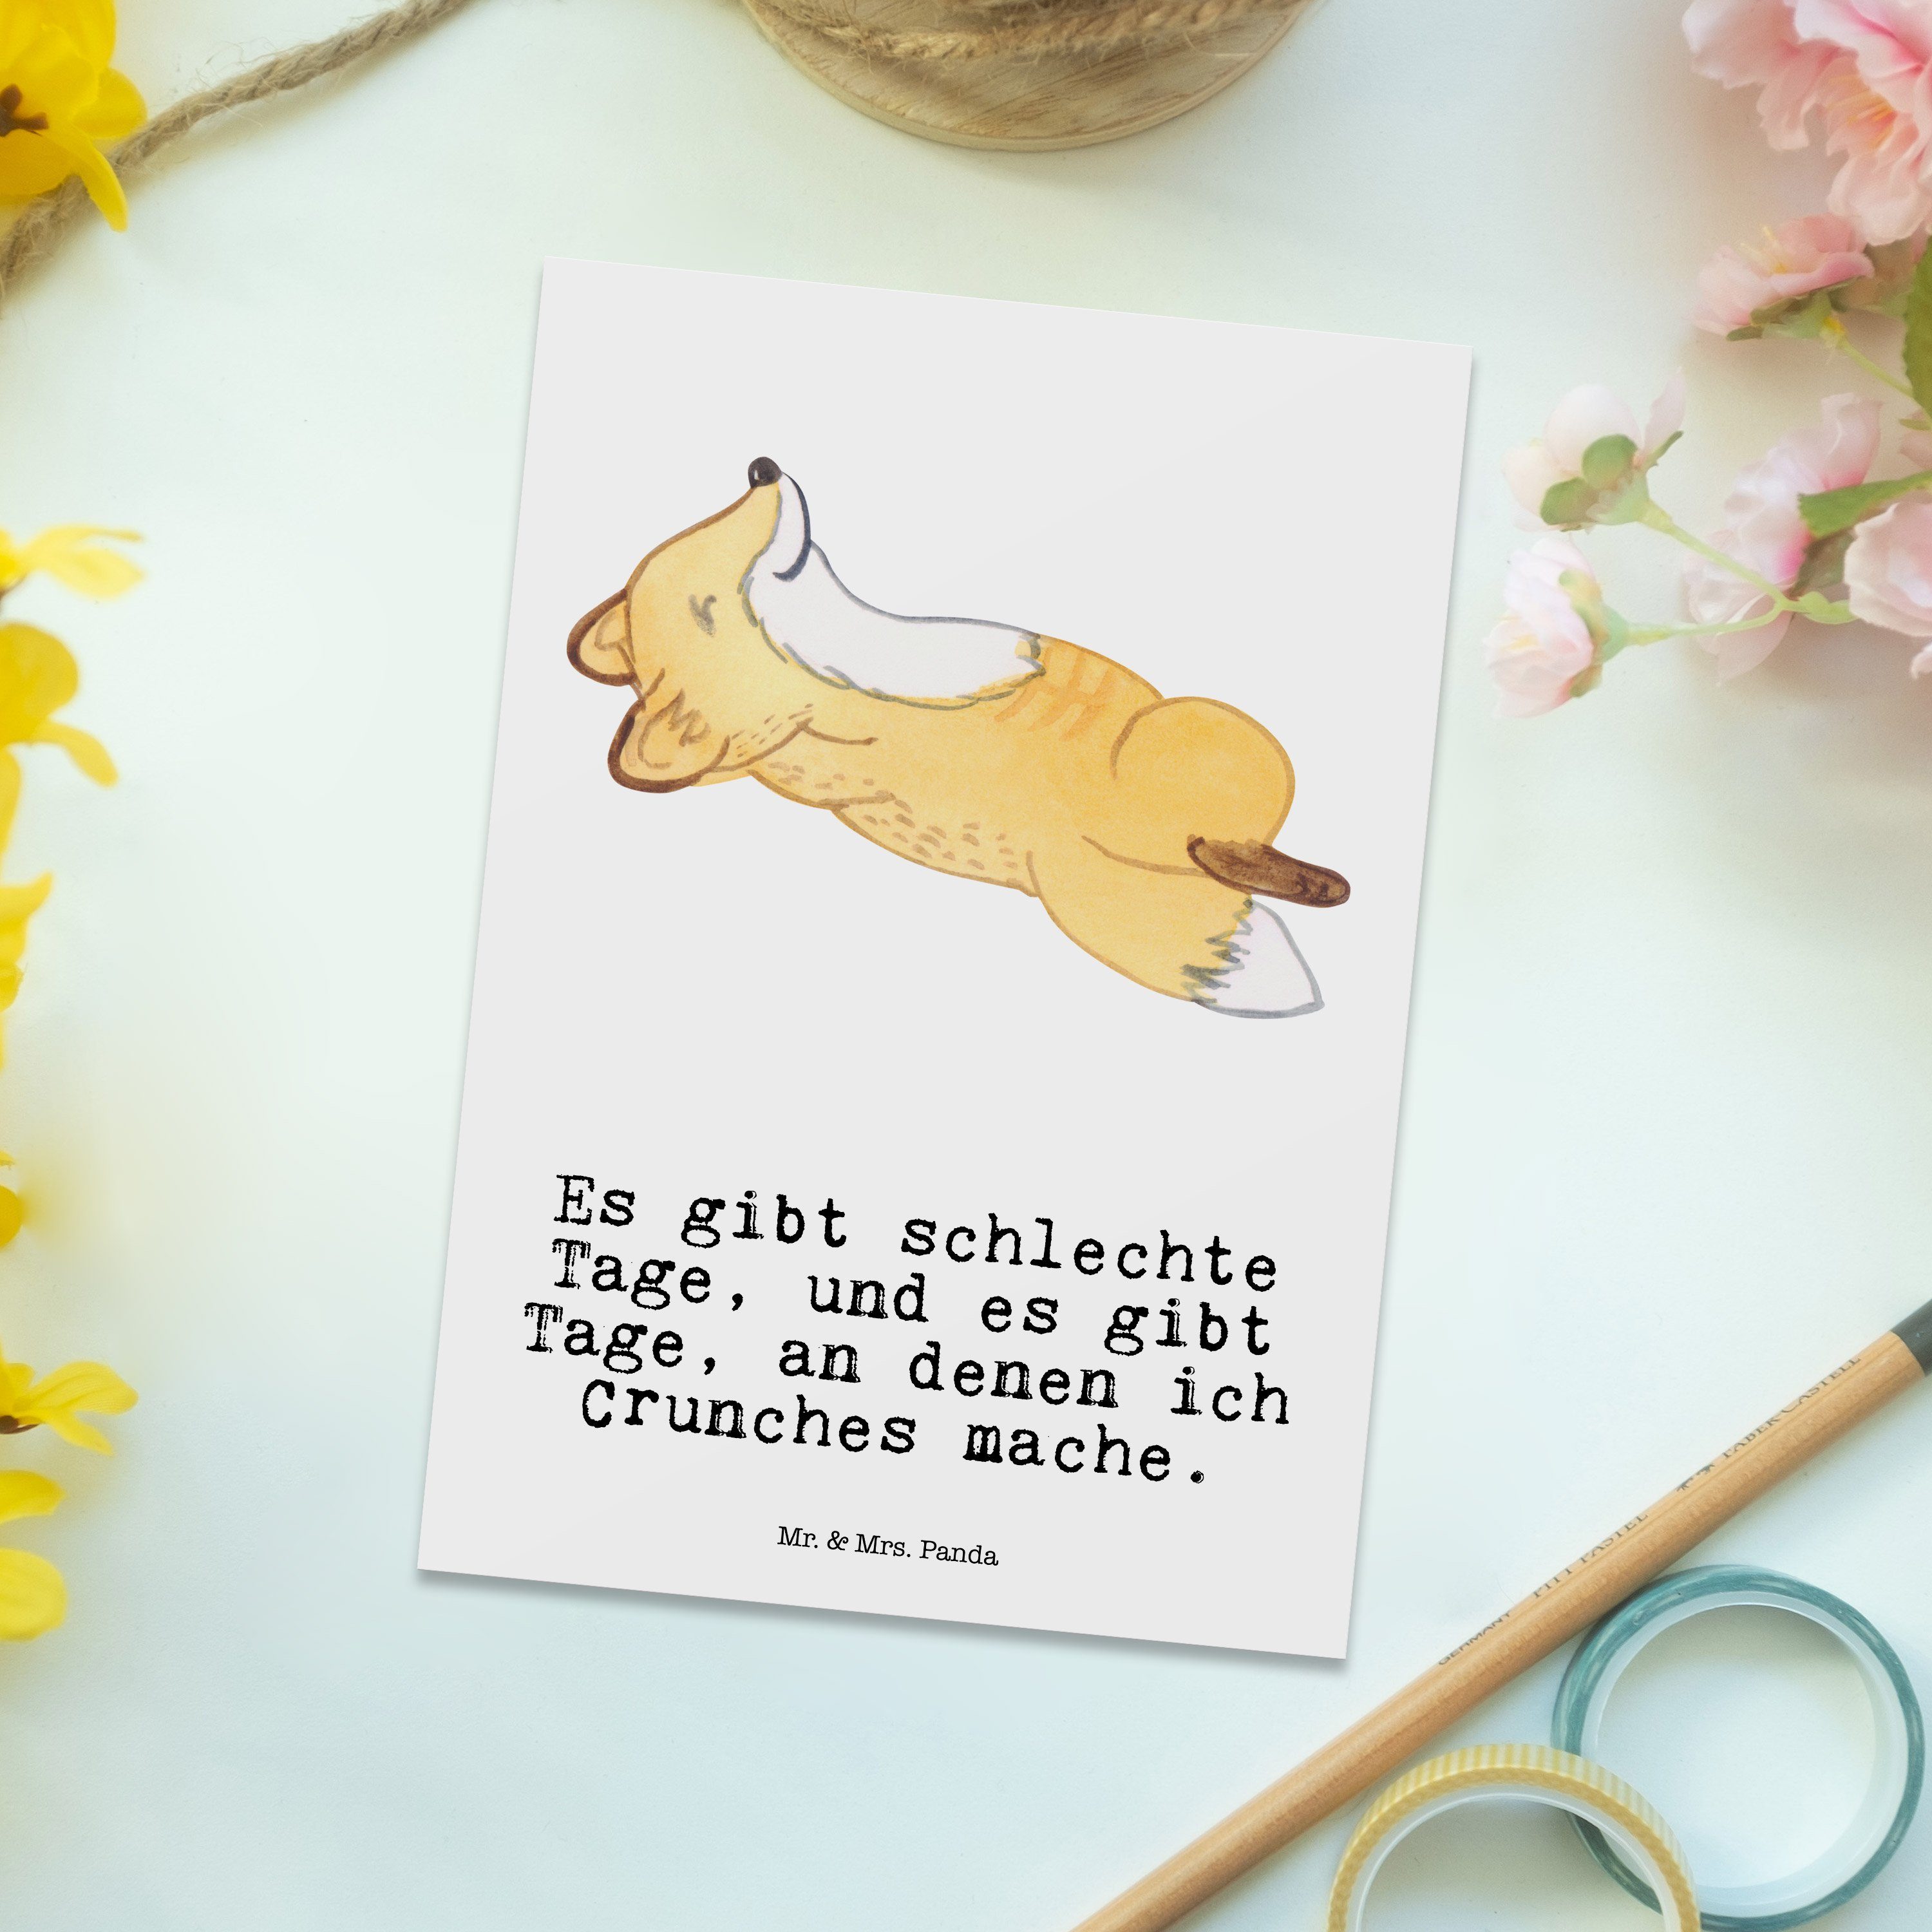 Mr. & Mrs. Panda Postkarte Crunches - Geschenk, Geschenkkarte Fuchs Schenken, Tage Weiß Hobby, 